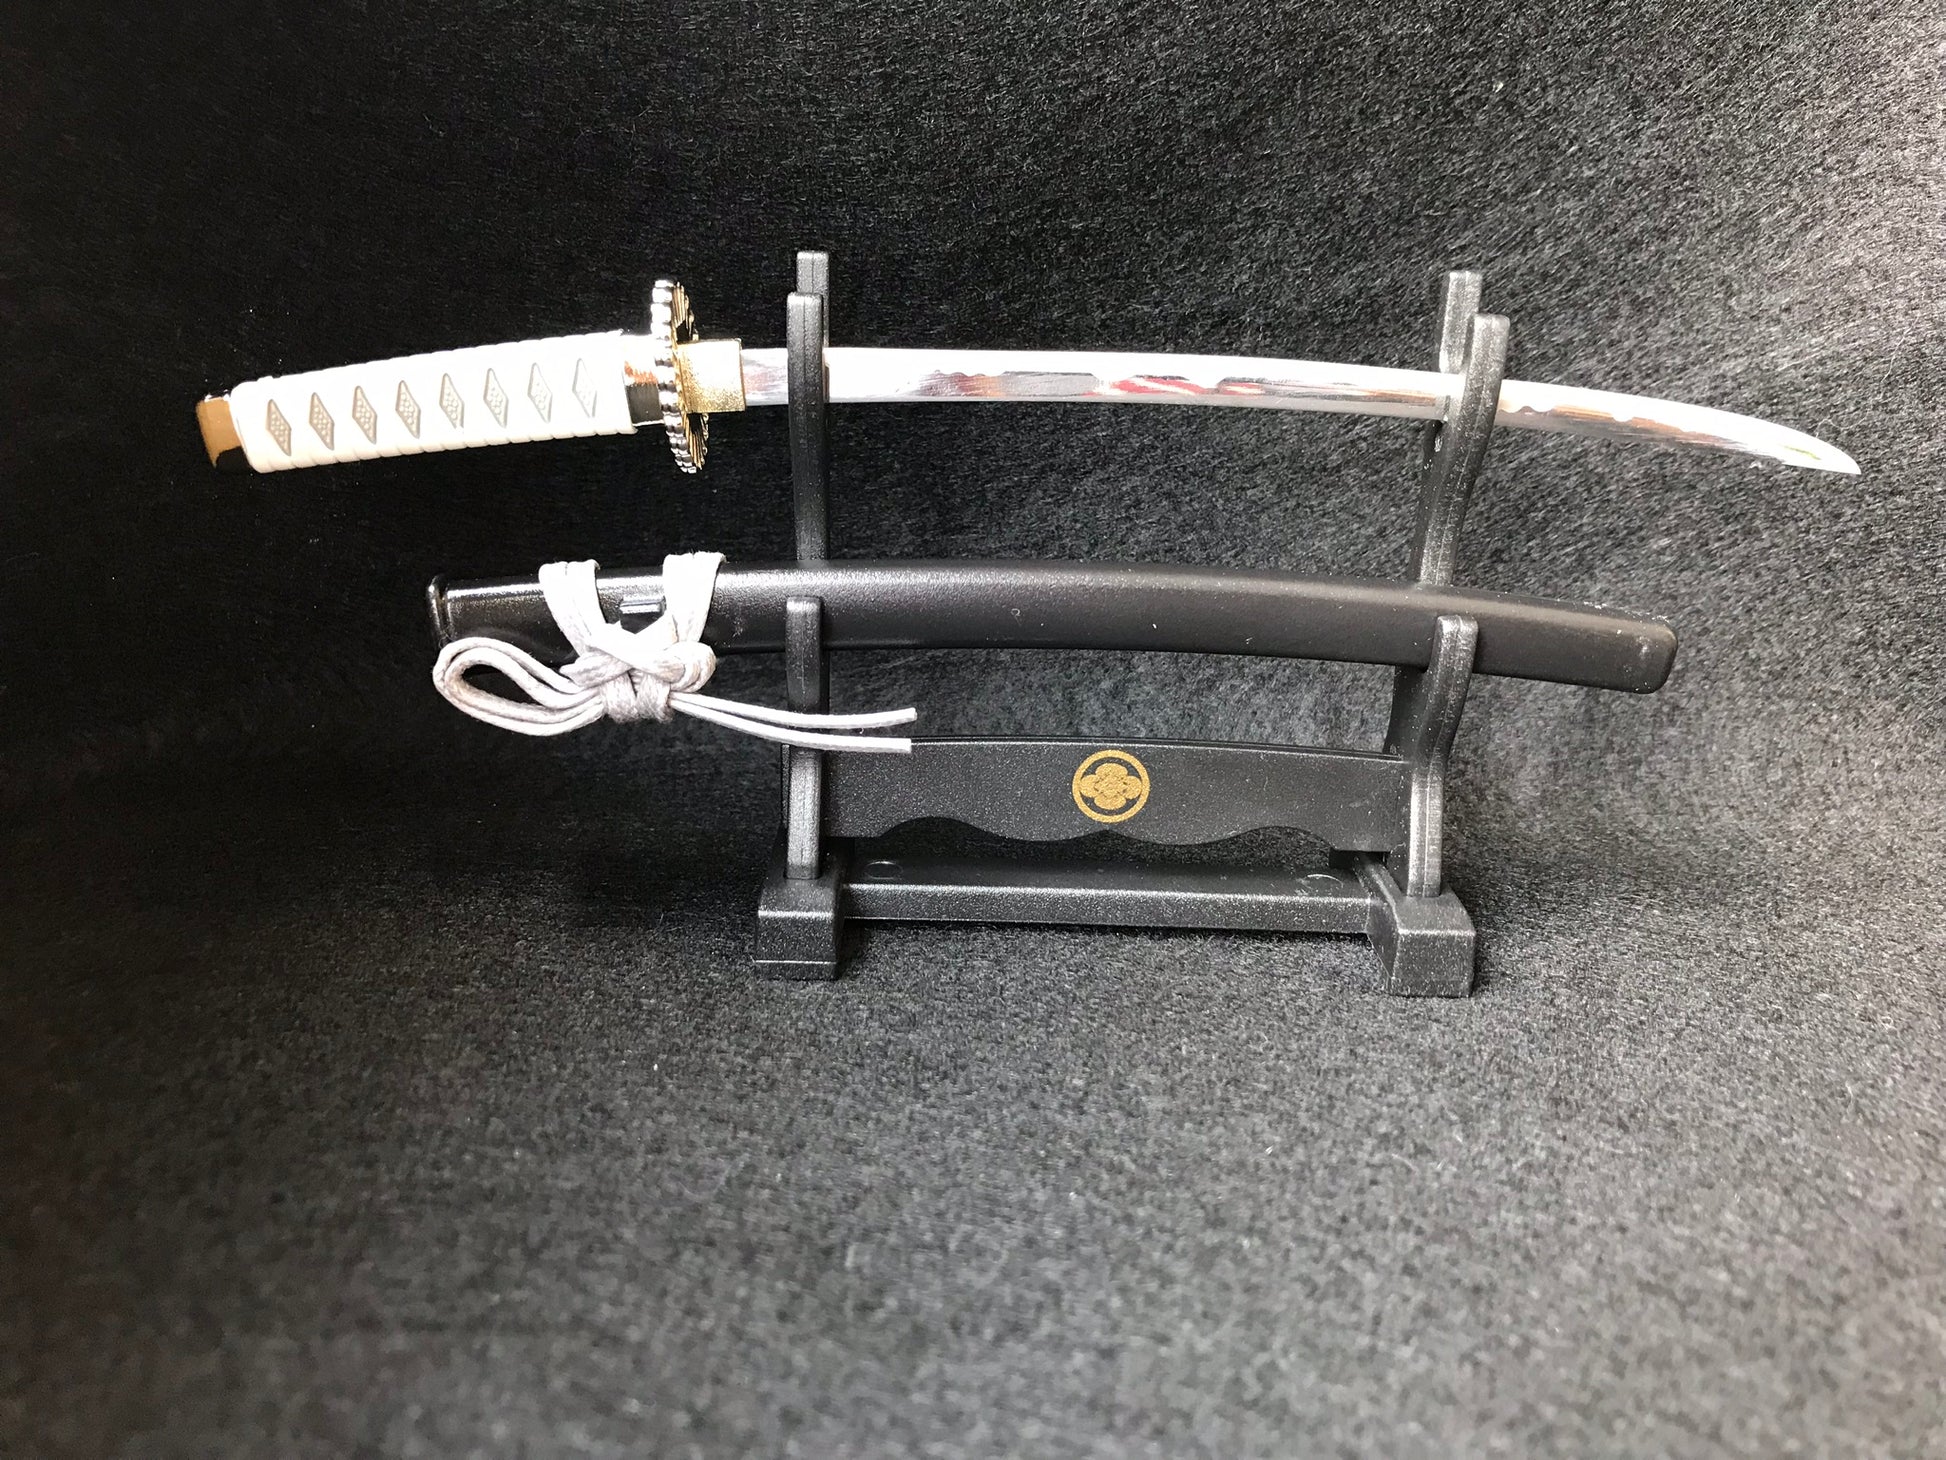 2PC Japanese Samurai Sword Fixed Blade Letter Opener Katana Knife